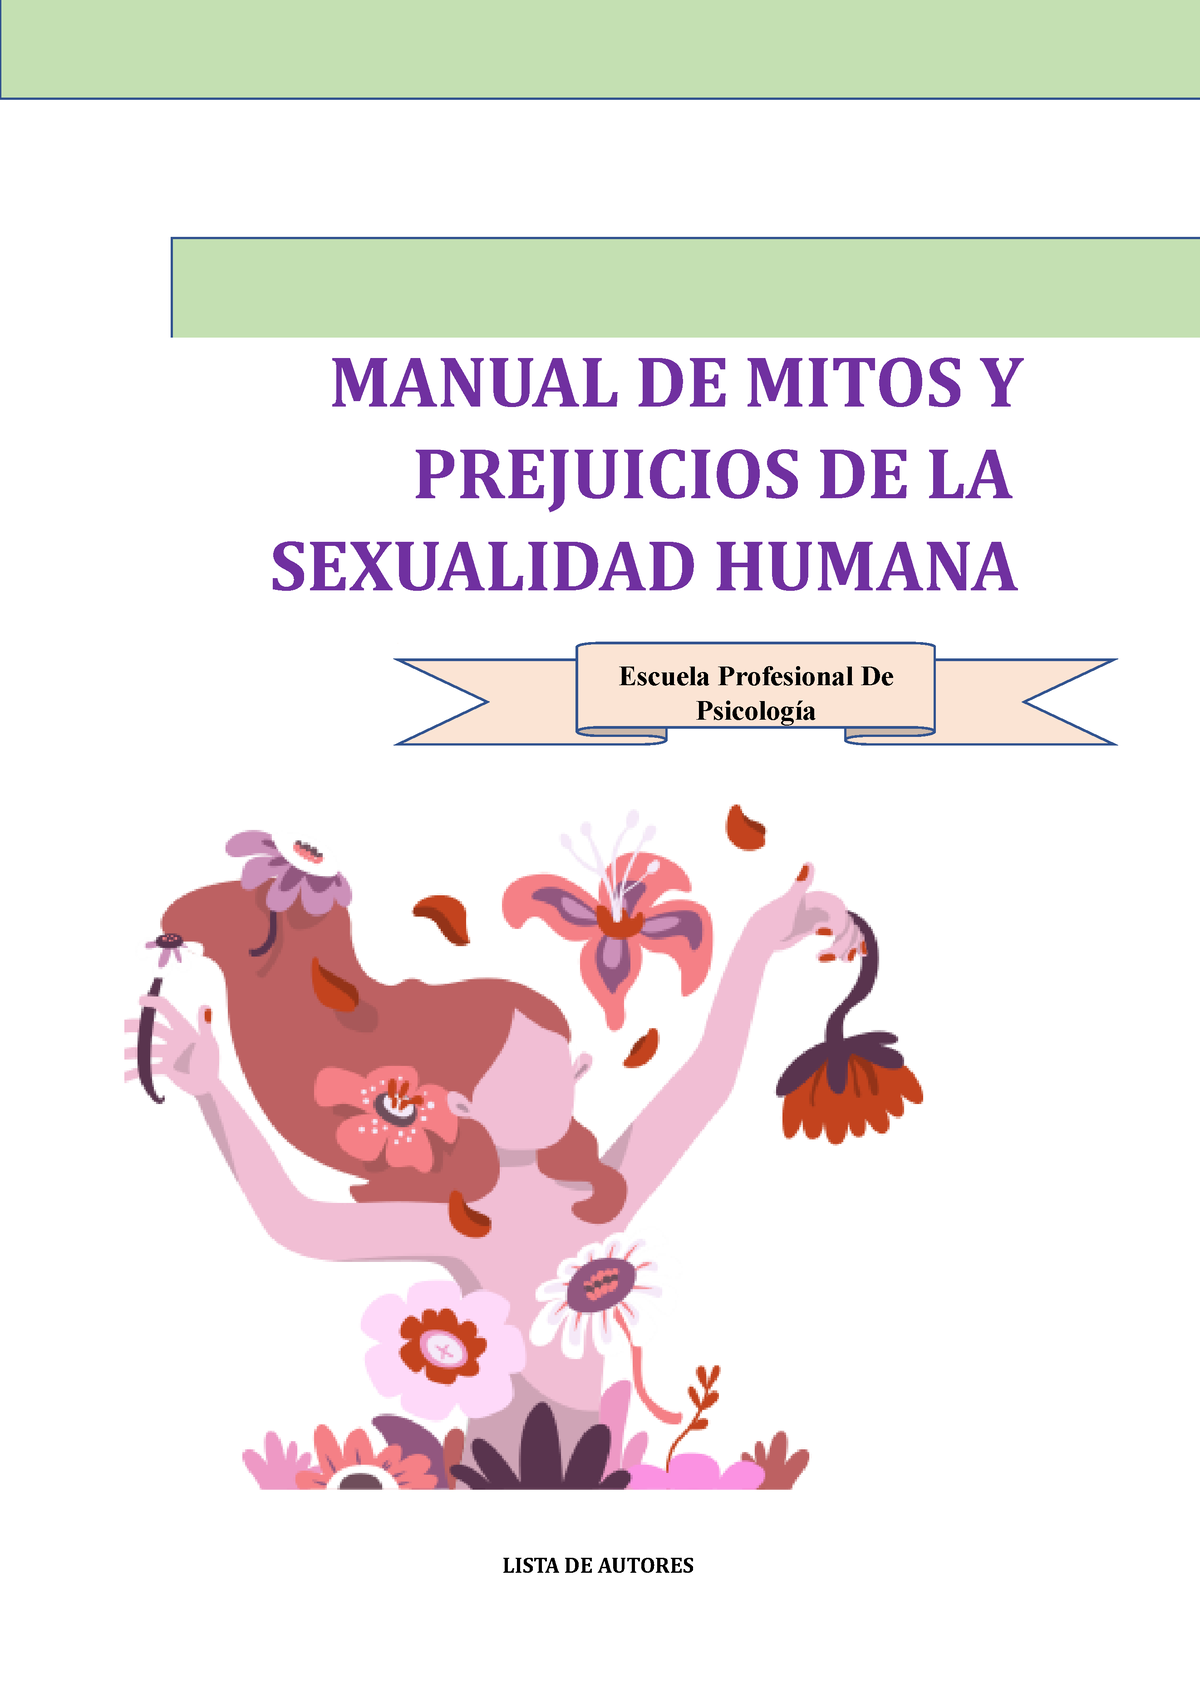 Manual De Mitos Y Prejuicios De La Sexualidad Humana Manual De Mitos Y Prejuicios De La 1690